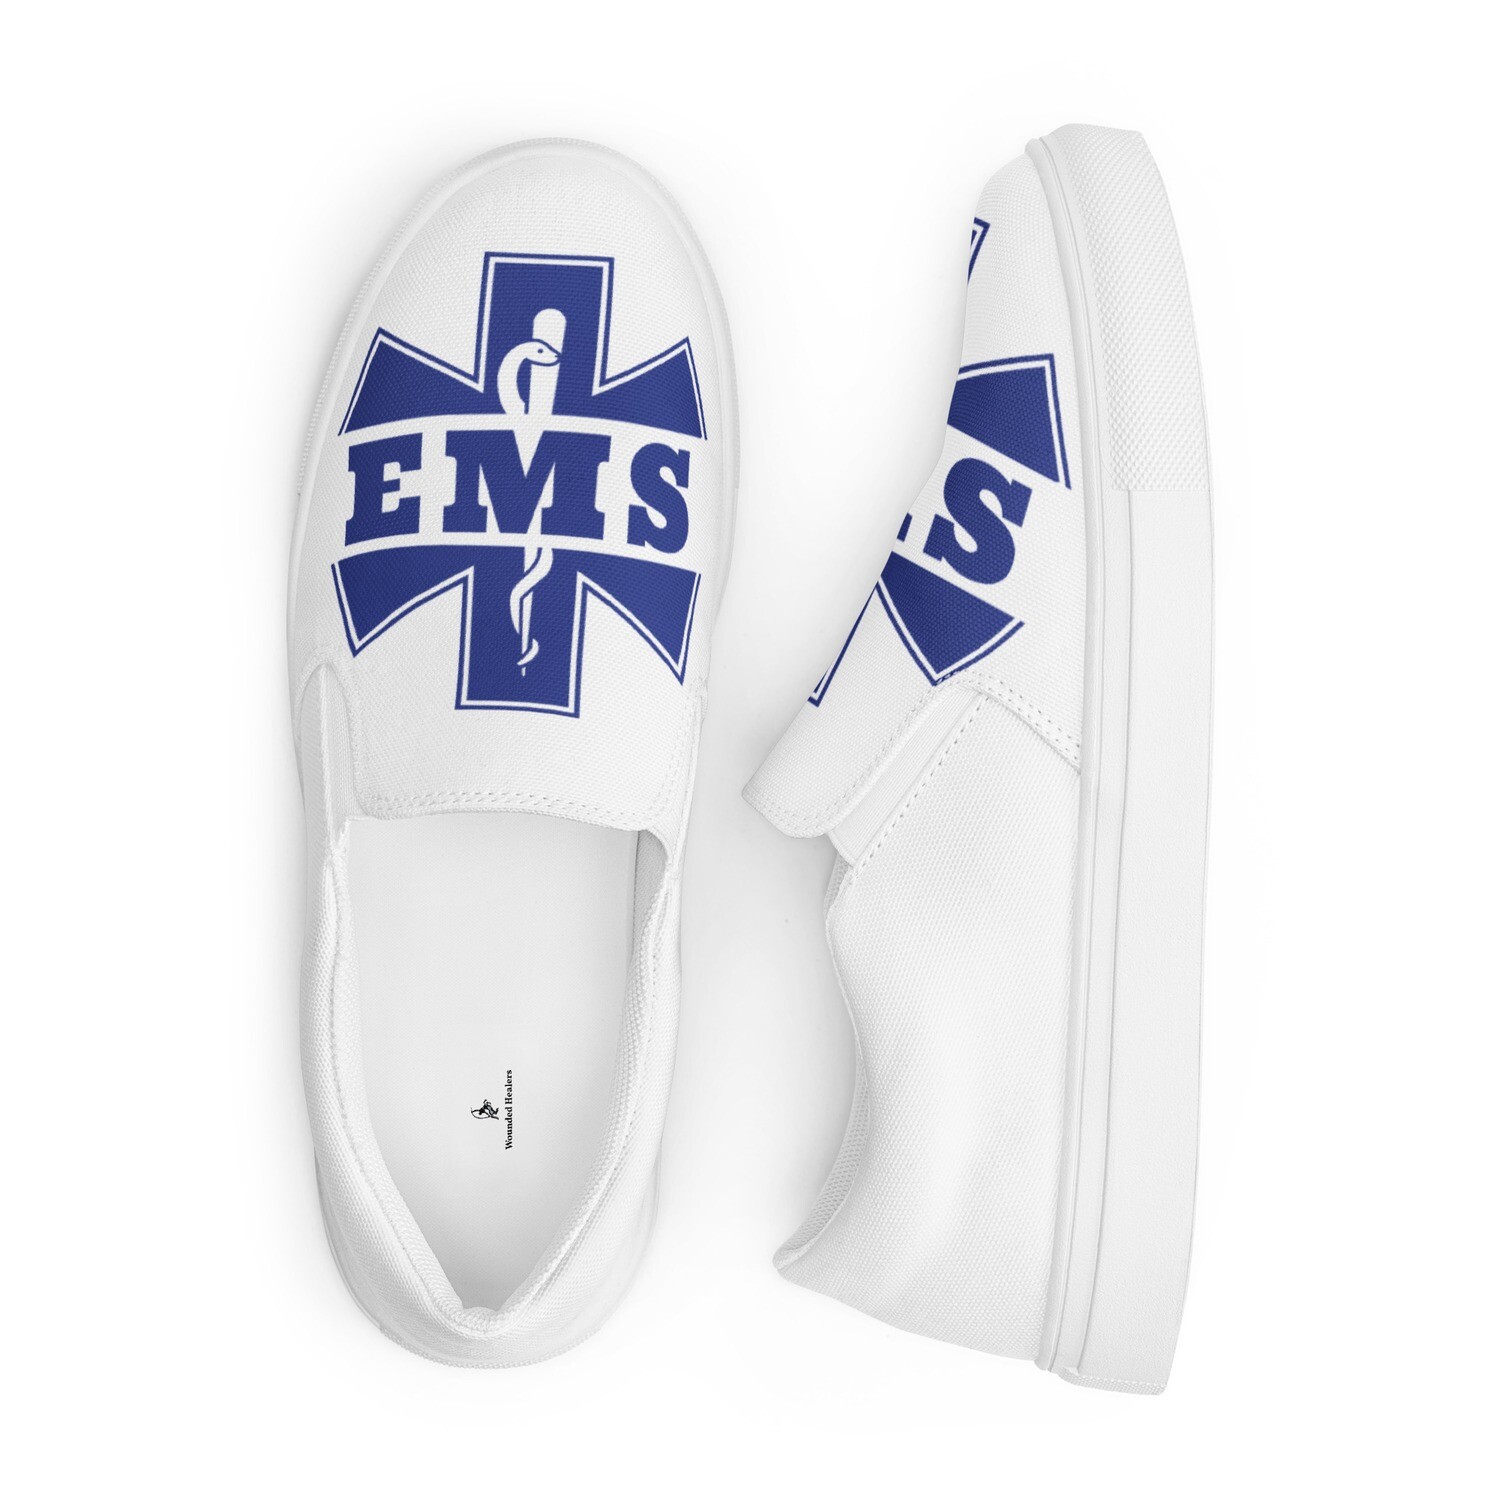 EMS Men’s slip-on canvas shoes